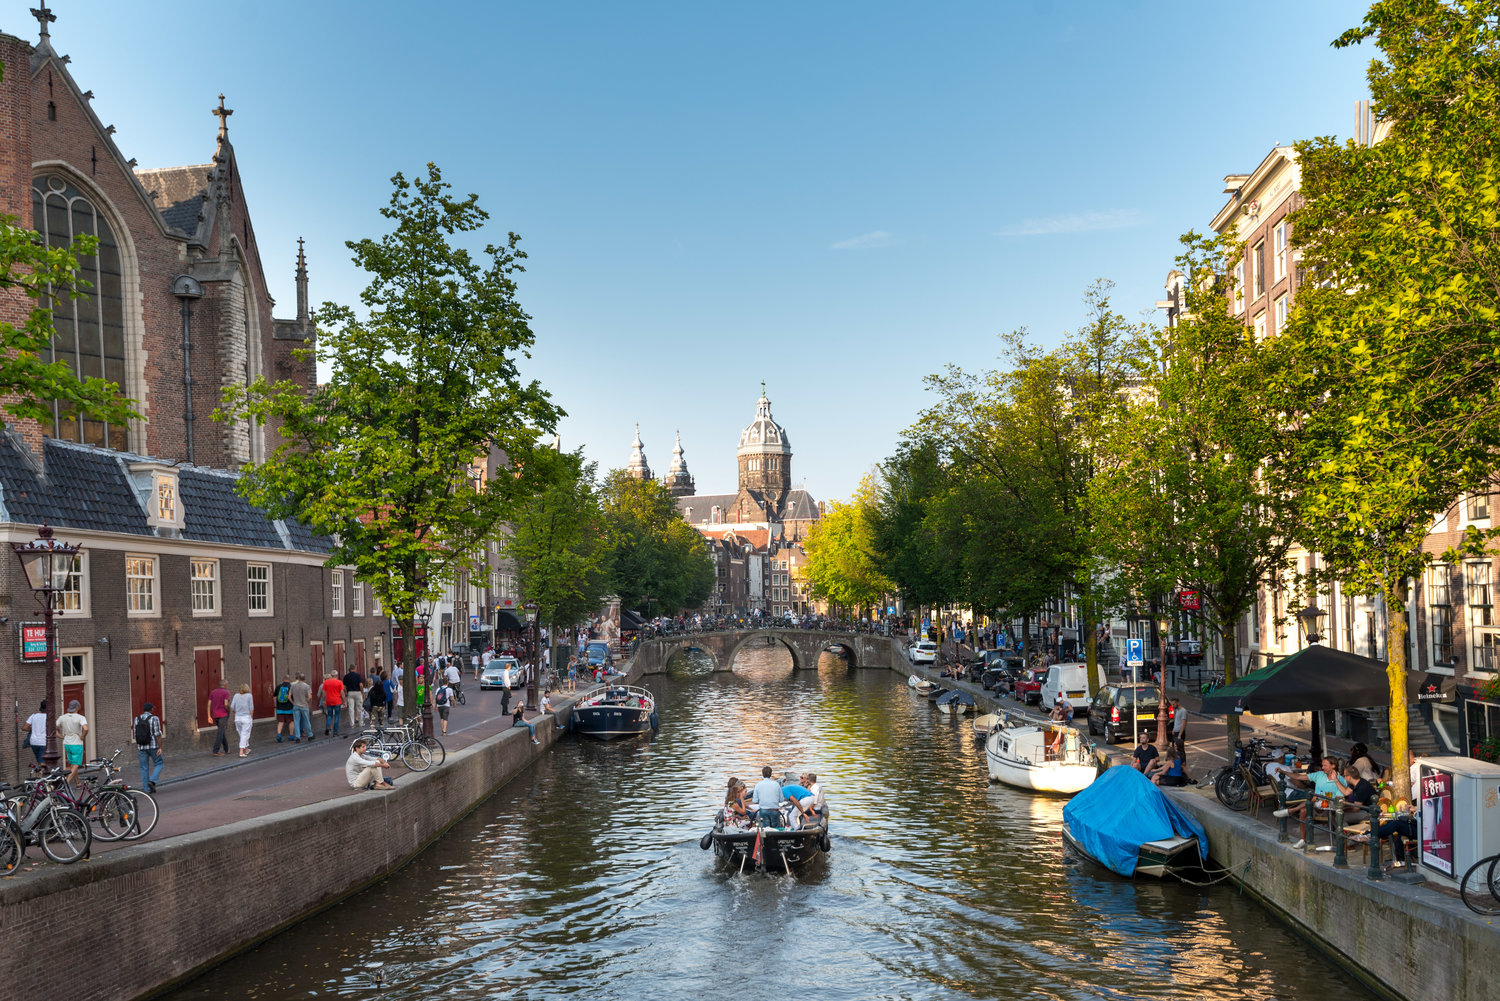 Káº¿t quáº£ hÃ¬nh áº£nh cho Amsterdam Canal